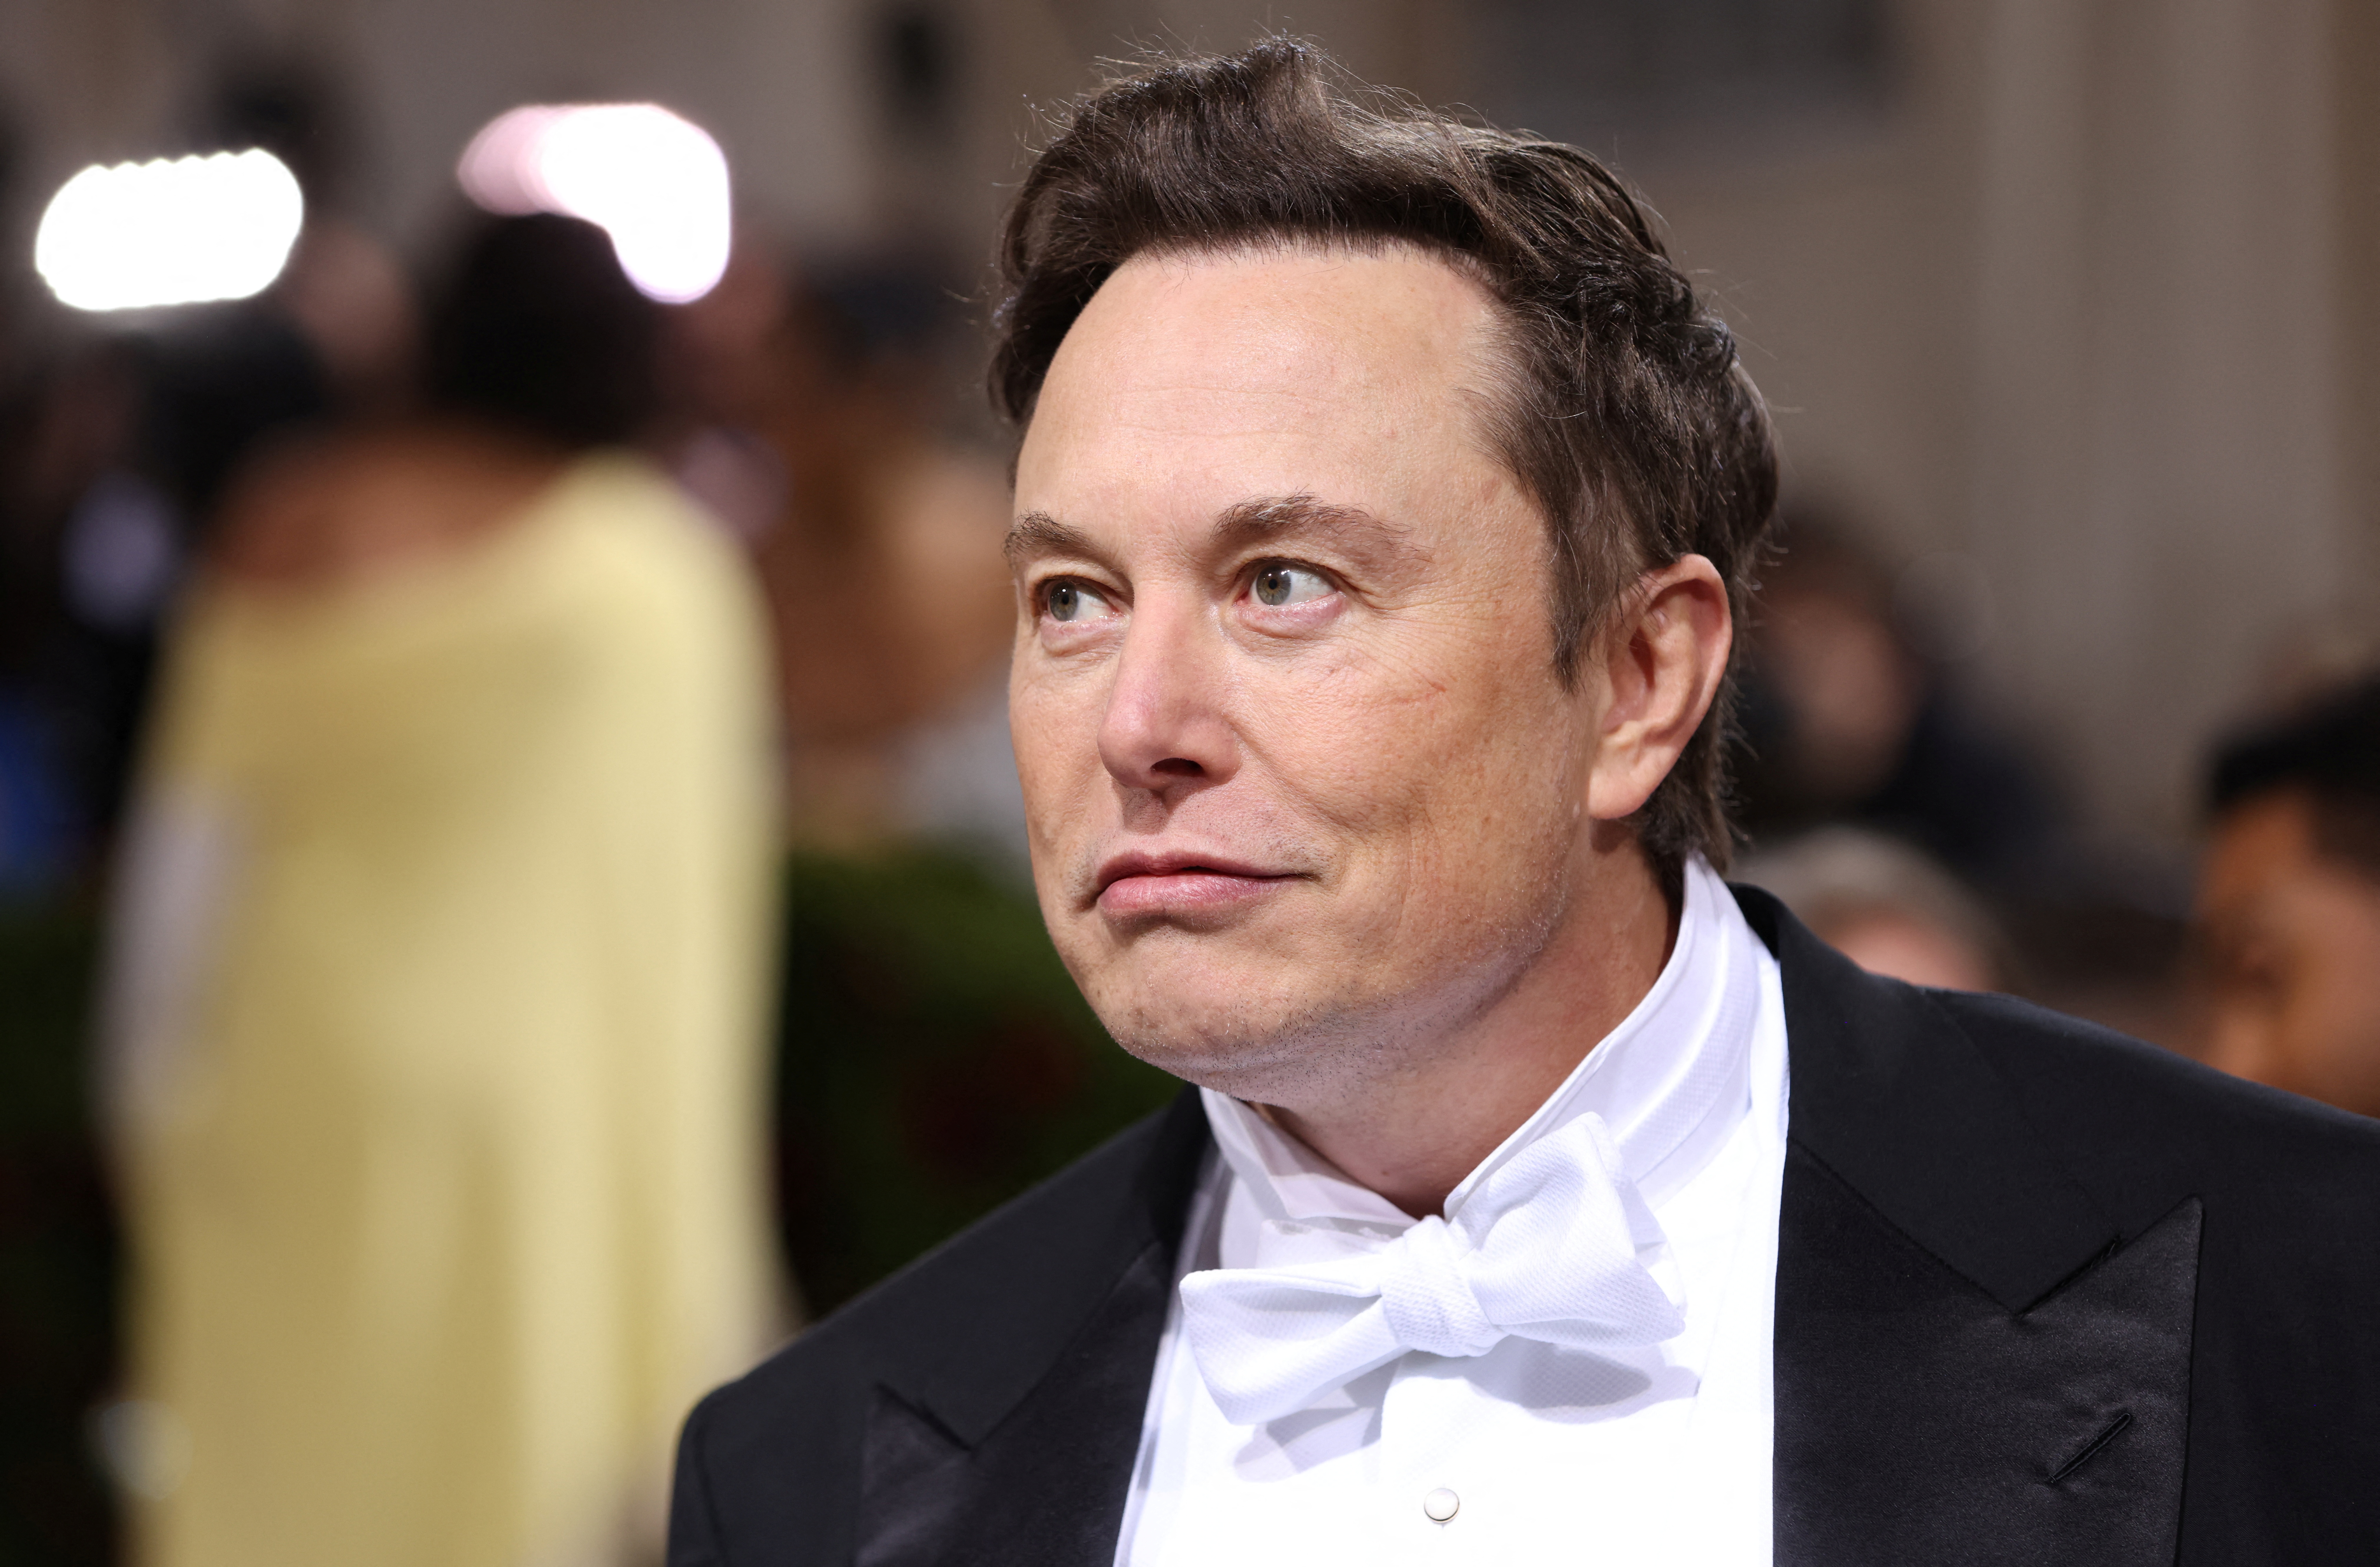 Des salariés de SpaceX licenciés pour avoir critiqué ouvertement leur patron Elon Musk